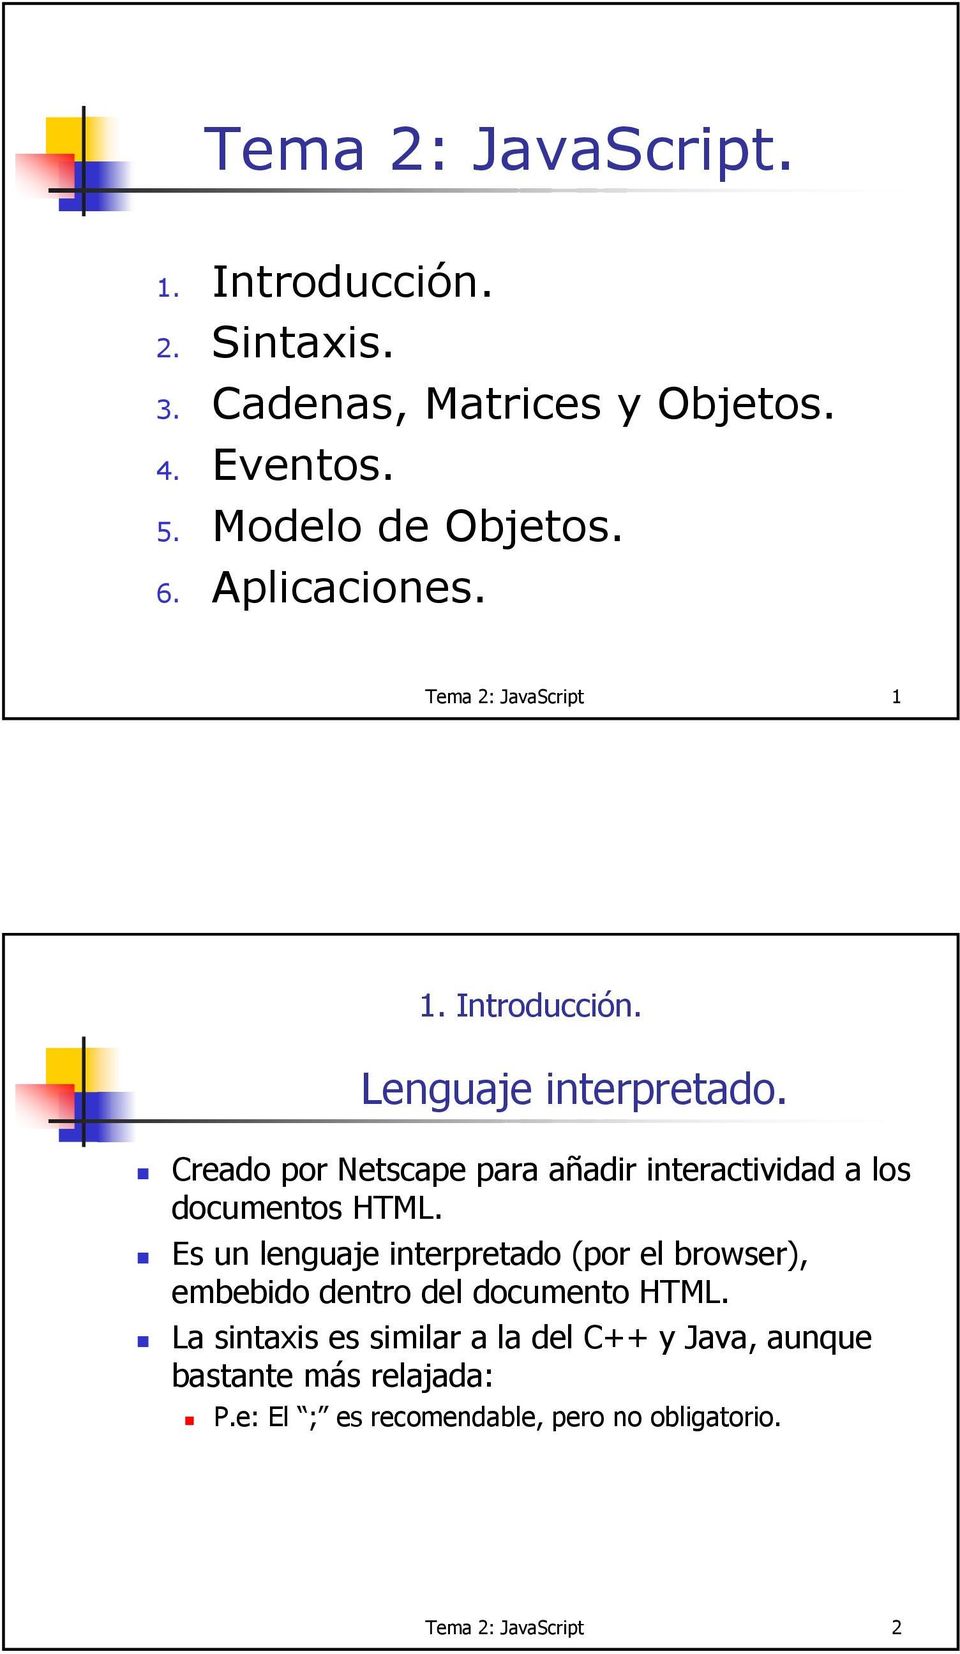 Creado por Netscape para añadir interactividad a los documentos HTML.